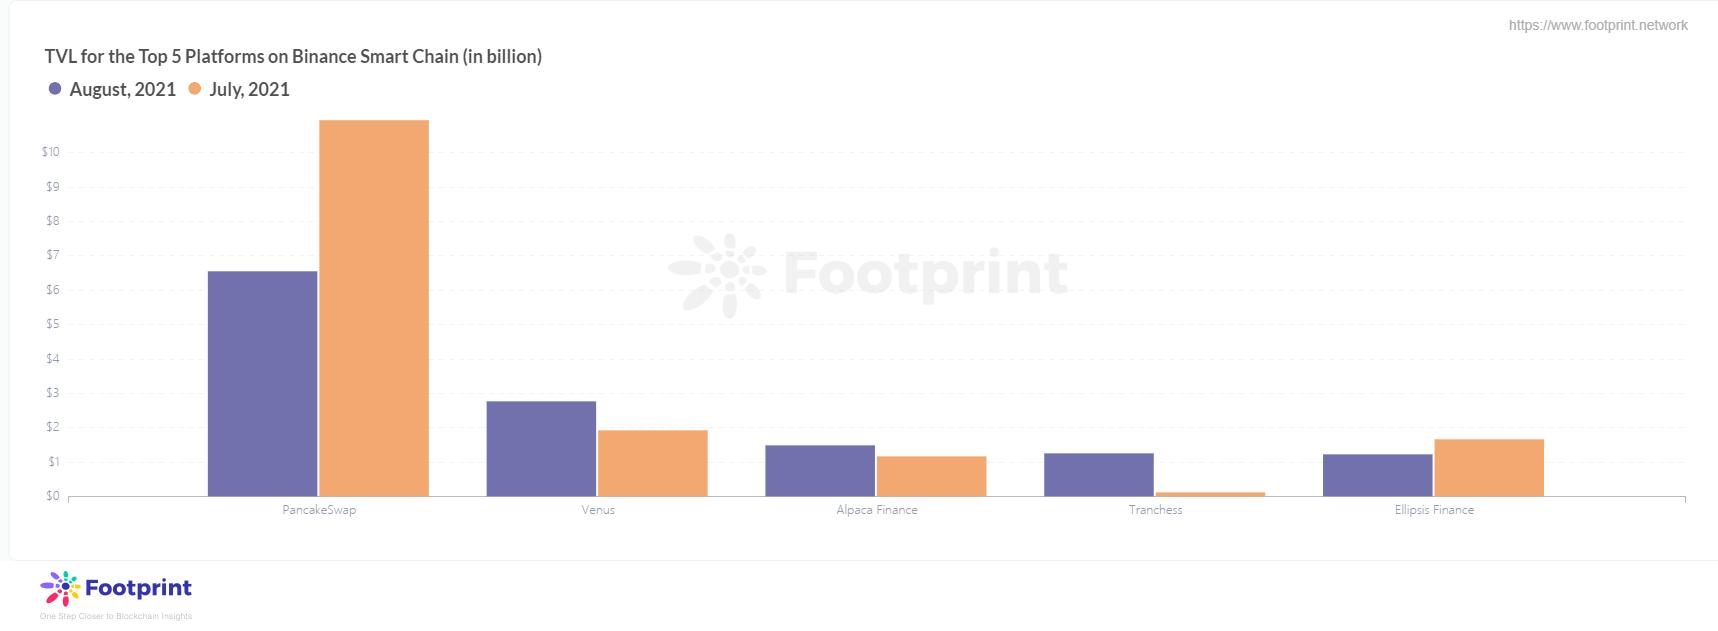 以太鏈與幣安智能鏈頭部平台TVL變化數據來源：Footprint Analytics